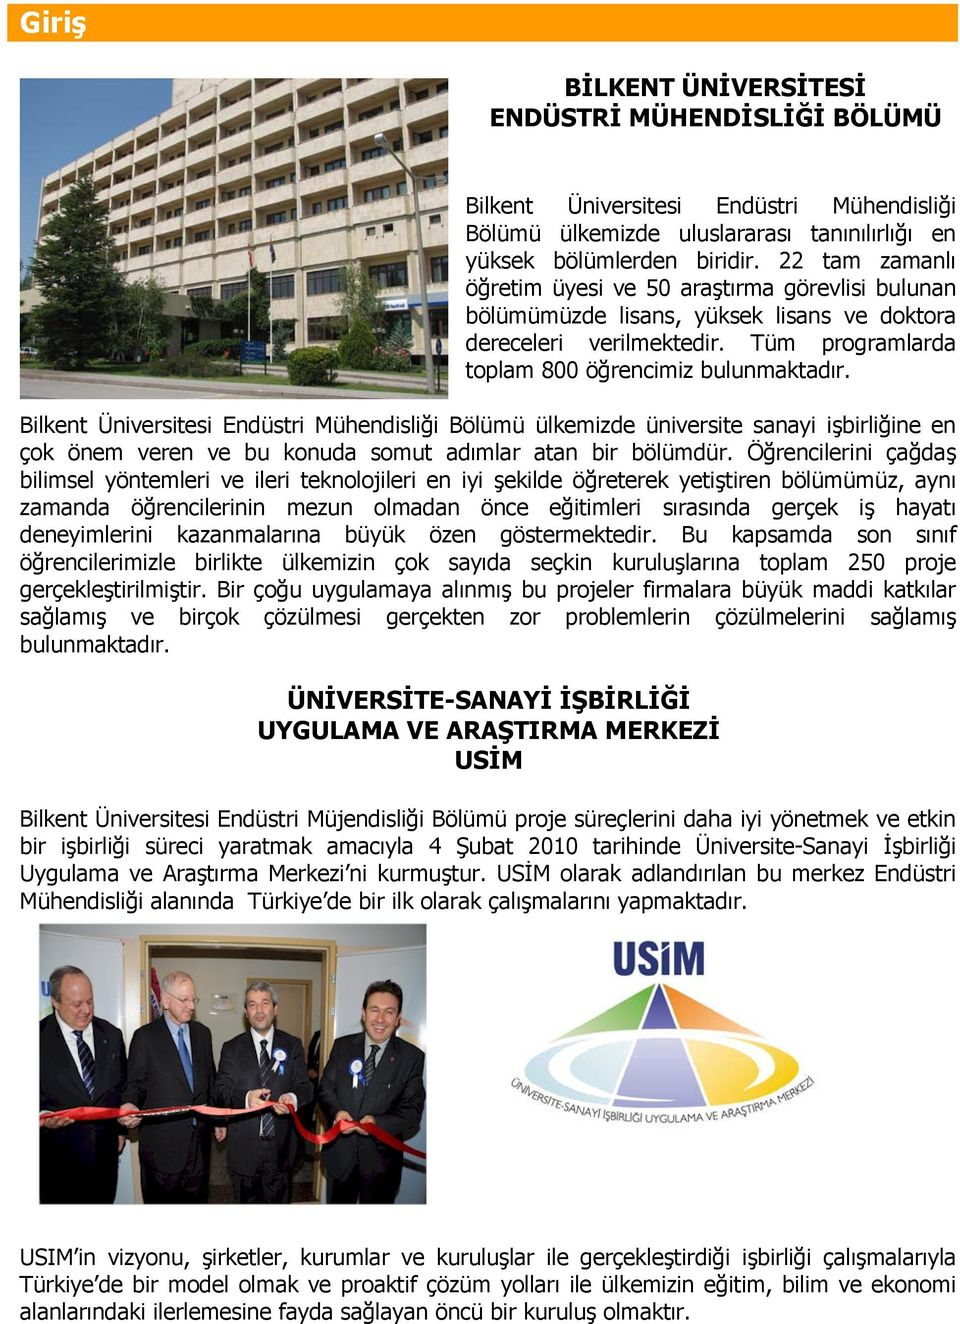 Bilkent Üniversitesi Endüstri Mühendisliği Bölümü ülkemizde üniversite sanayi işbirliğine en çok önem veren ve bu konuda somut adımlar atan bir bölümdür.